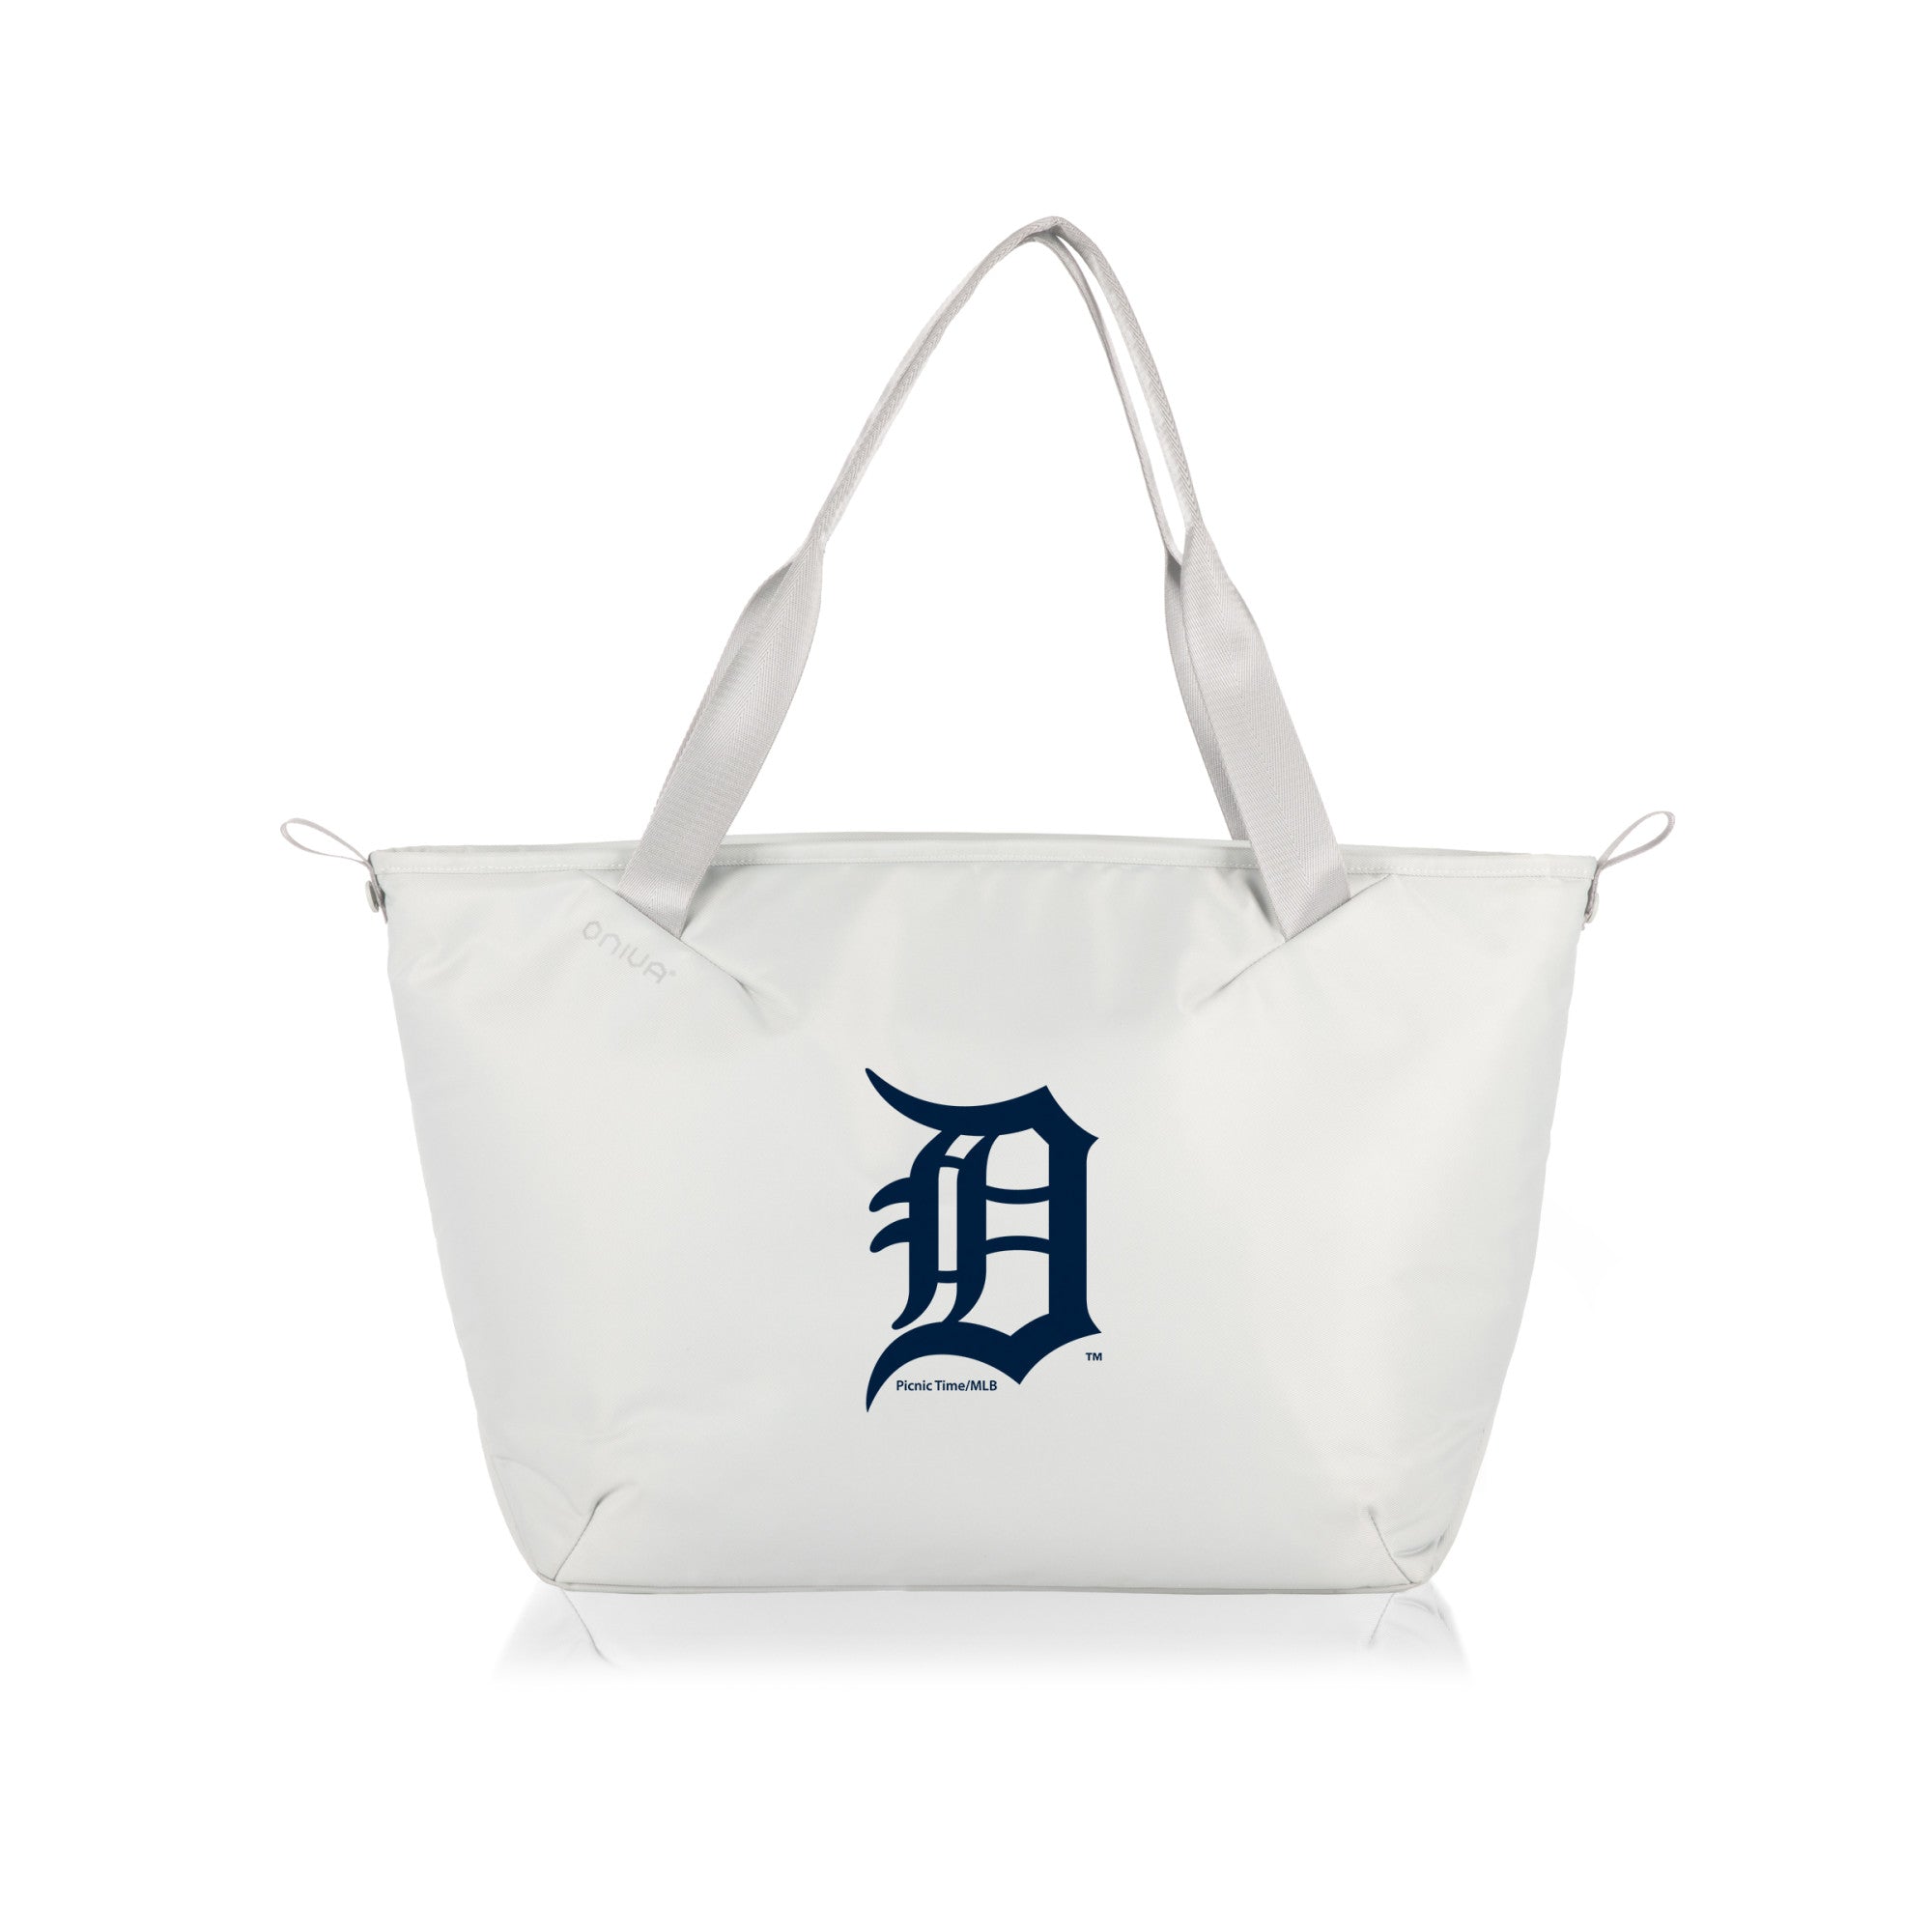 Detroit Tigers - Tarana Cooler Tote Bag